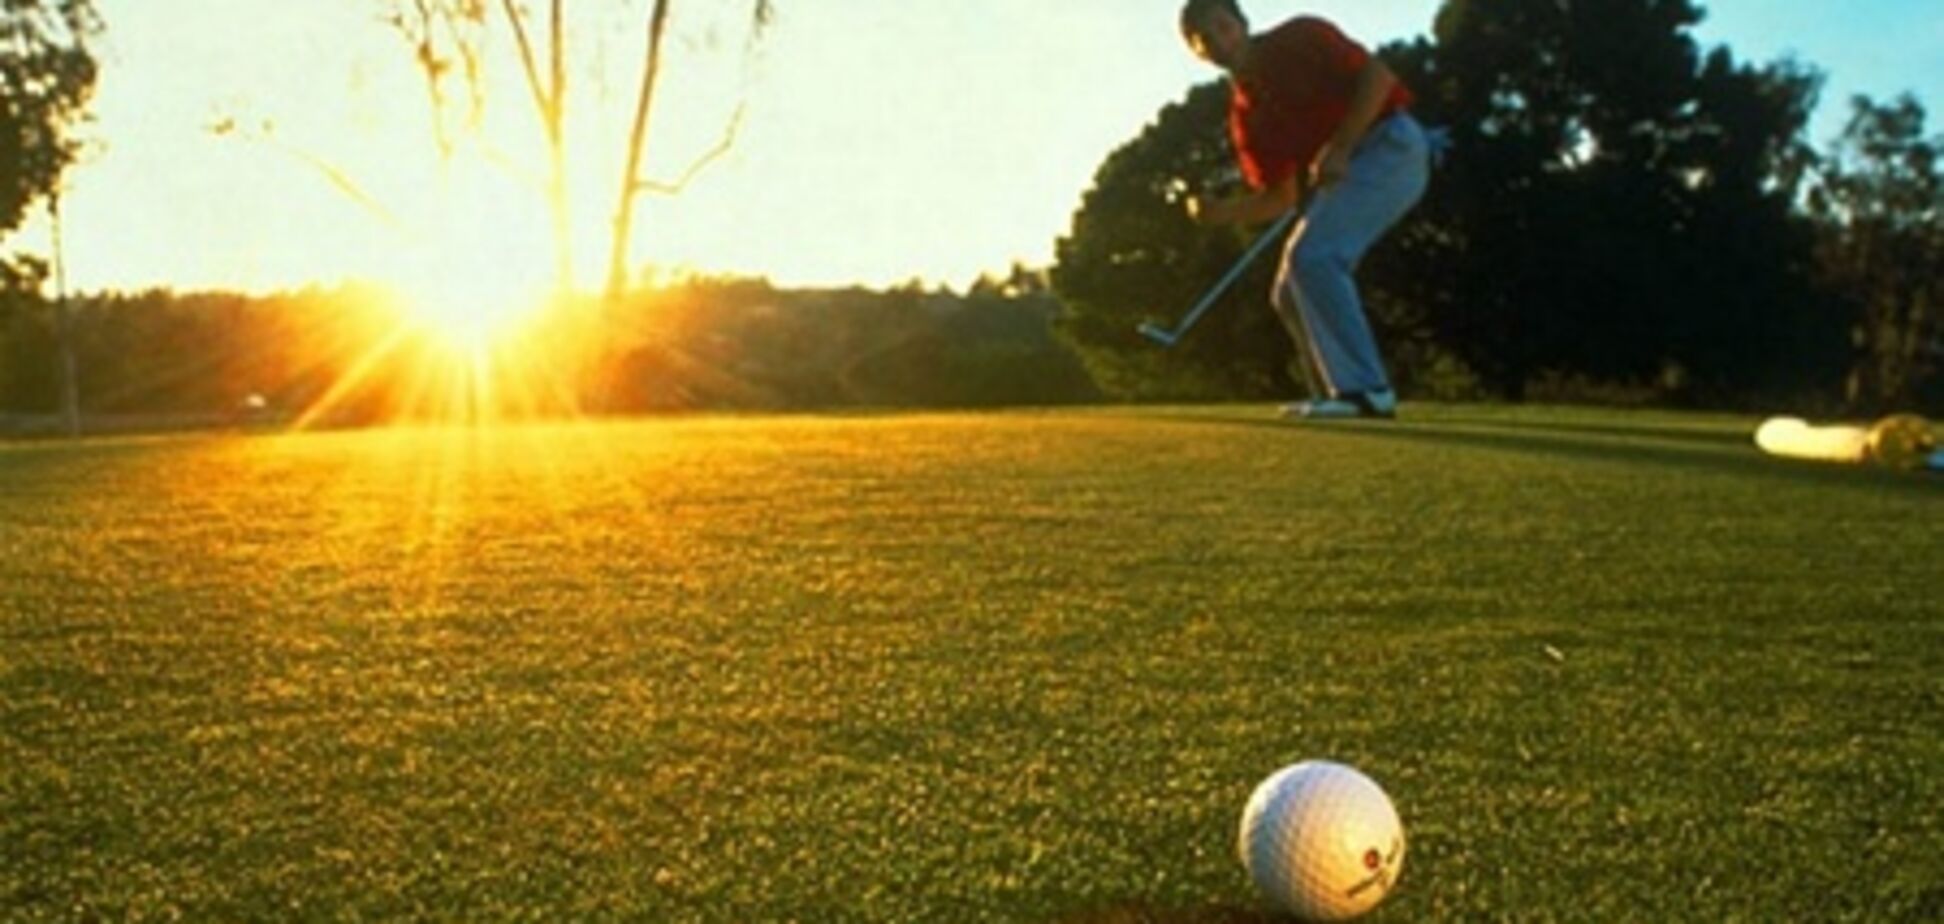 Абу-Даби - признан одним из лучших гольф-направлений мира